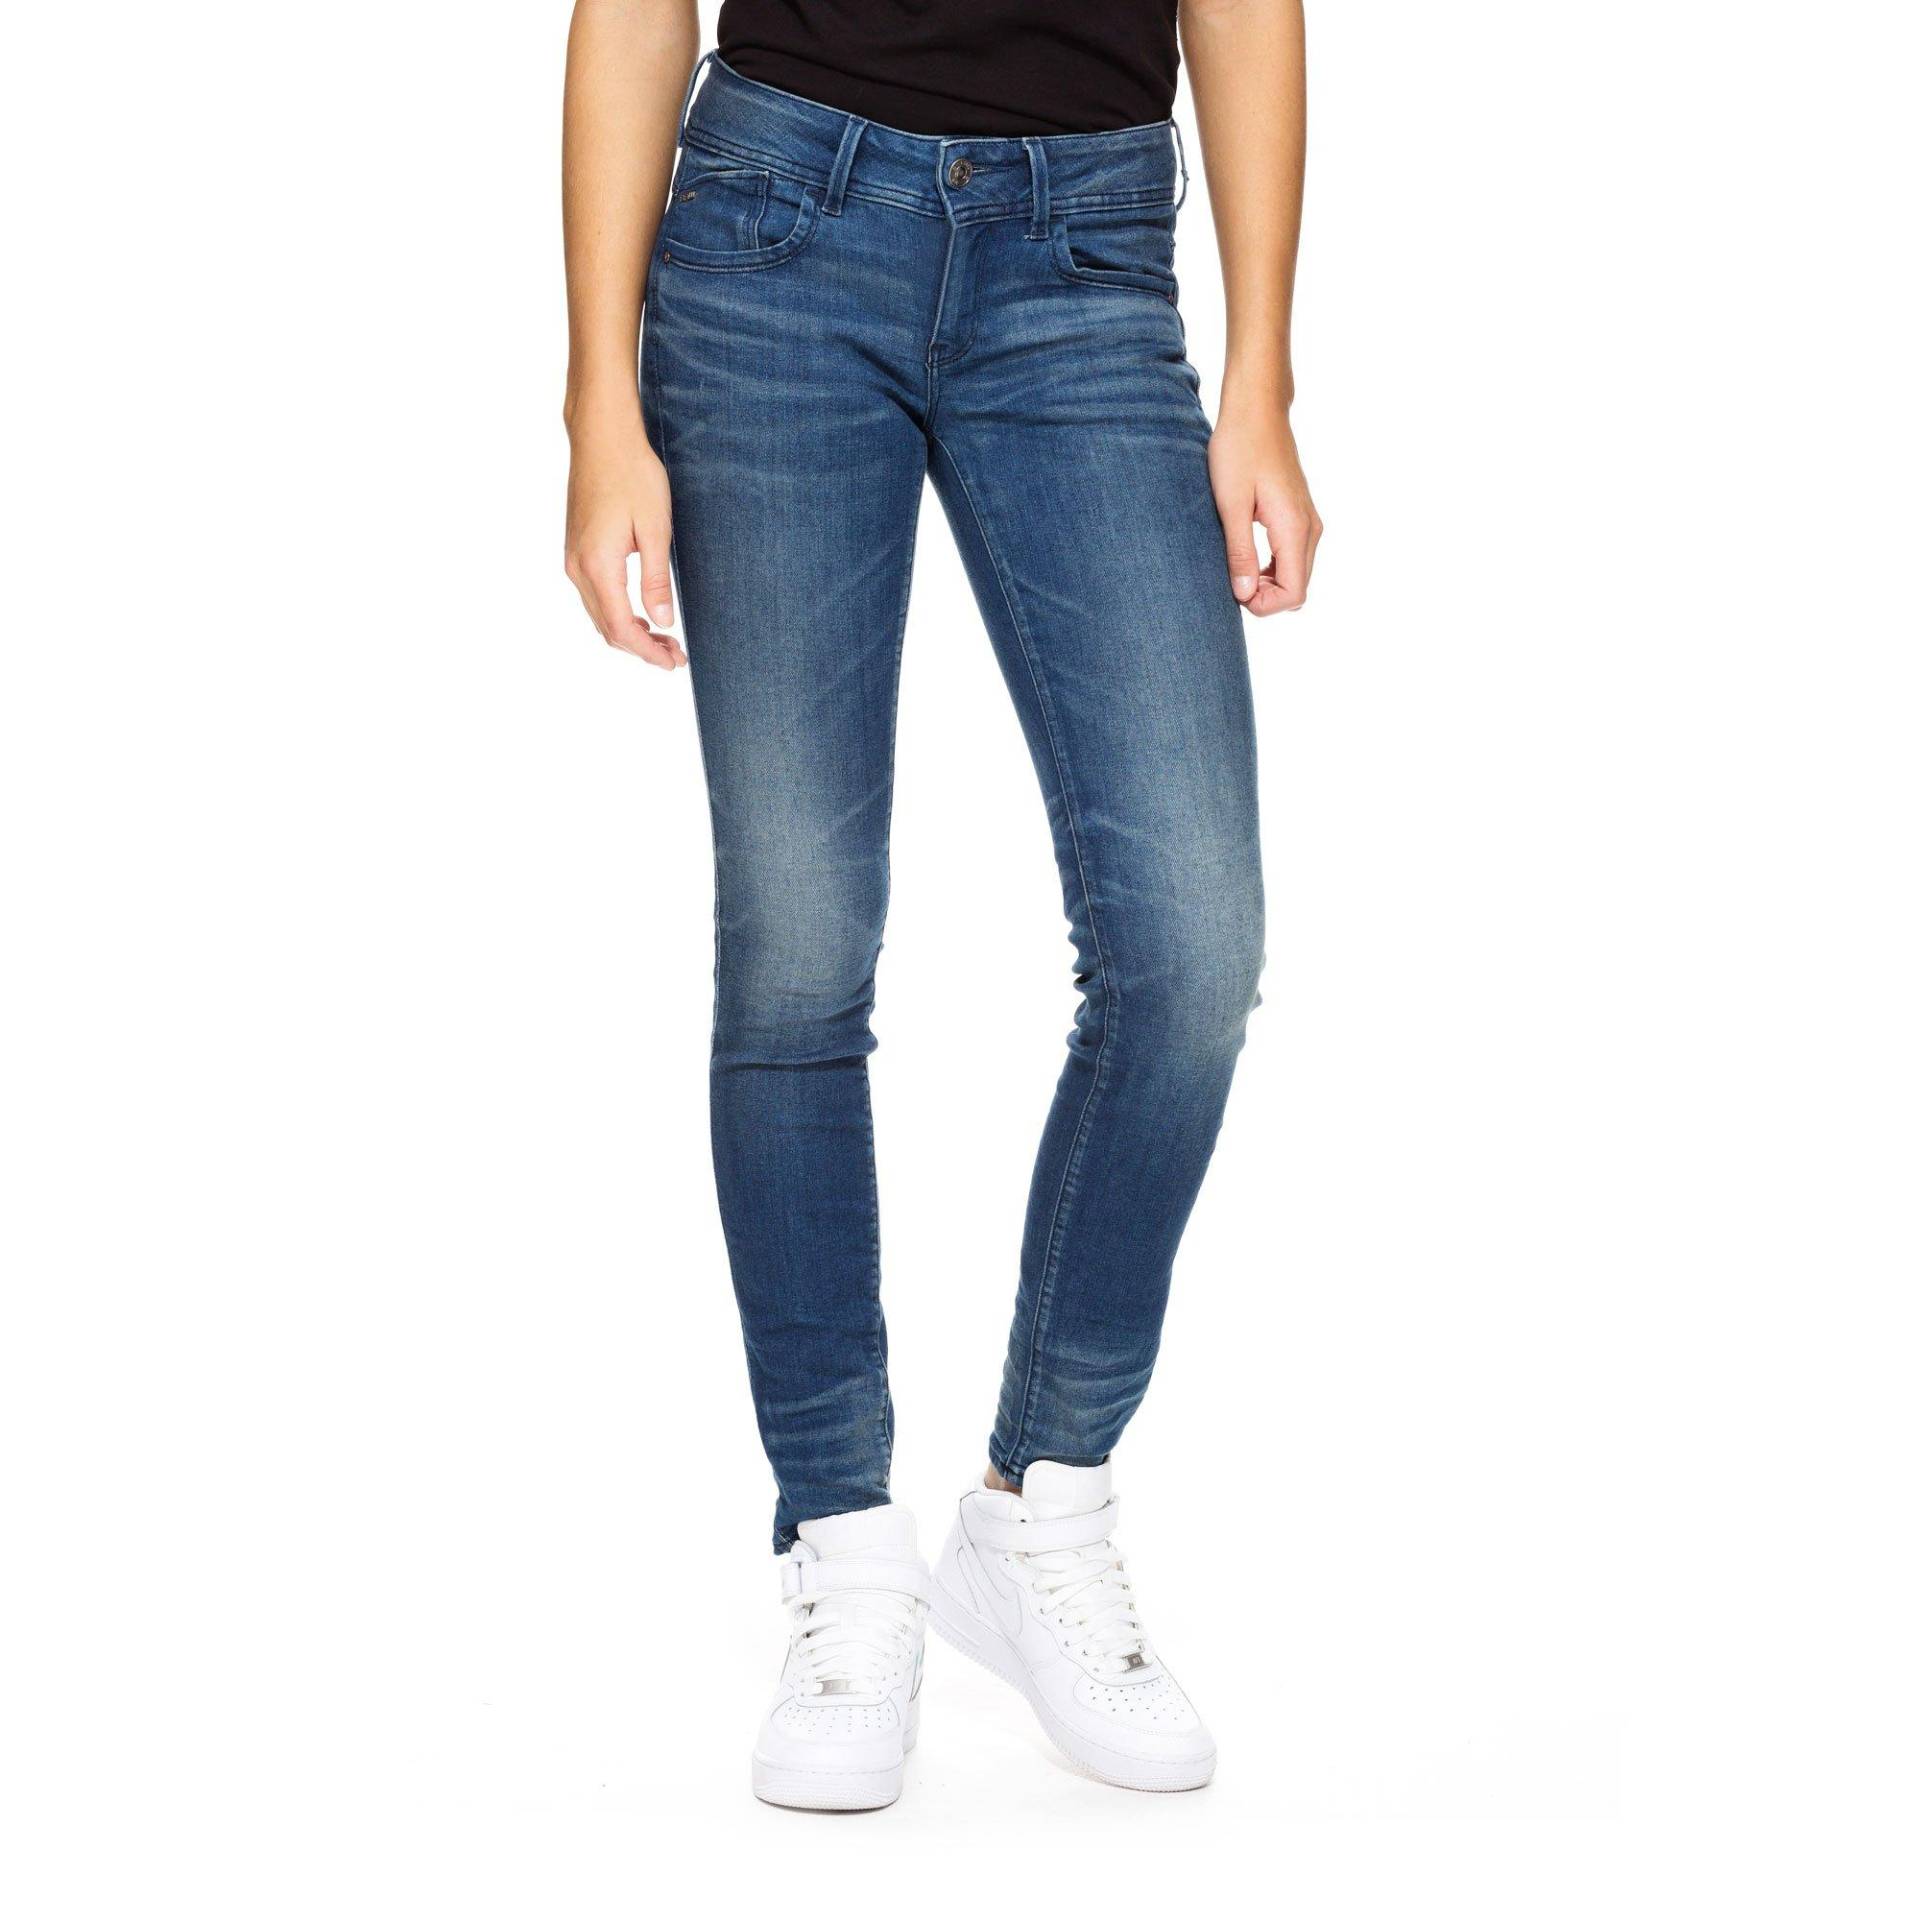 Jeans, Skinny Fit Damen Blau Denim L32/W28 von G-STAR